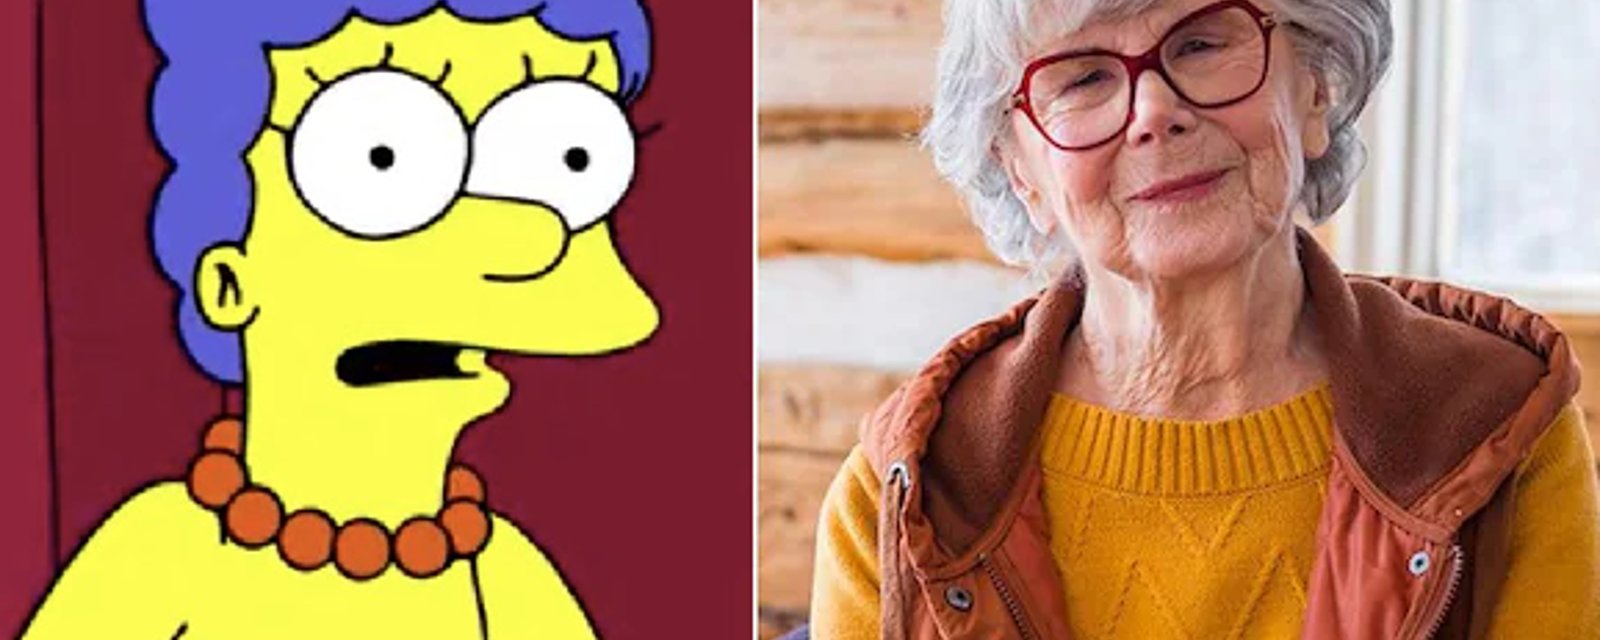 Béatrice Picard redevient la voix de Marge Simpson